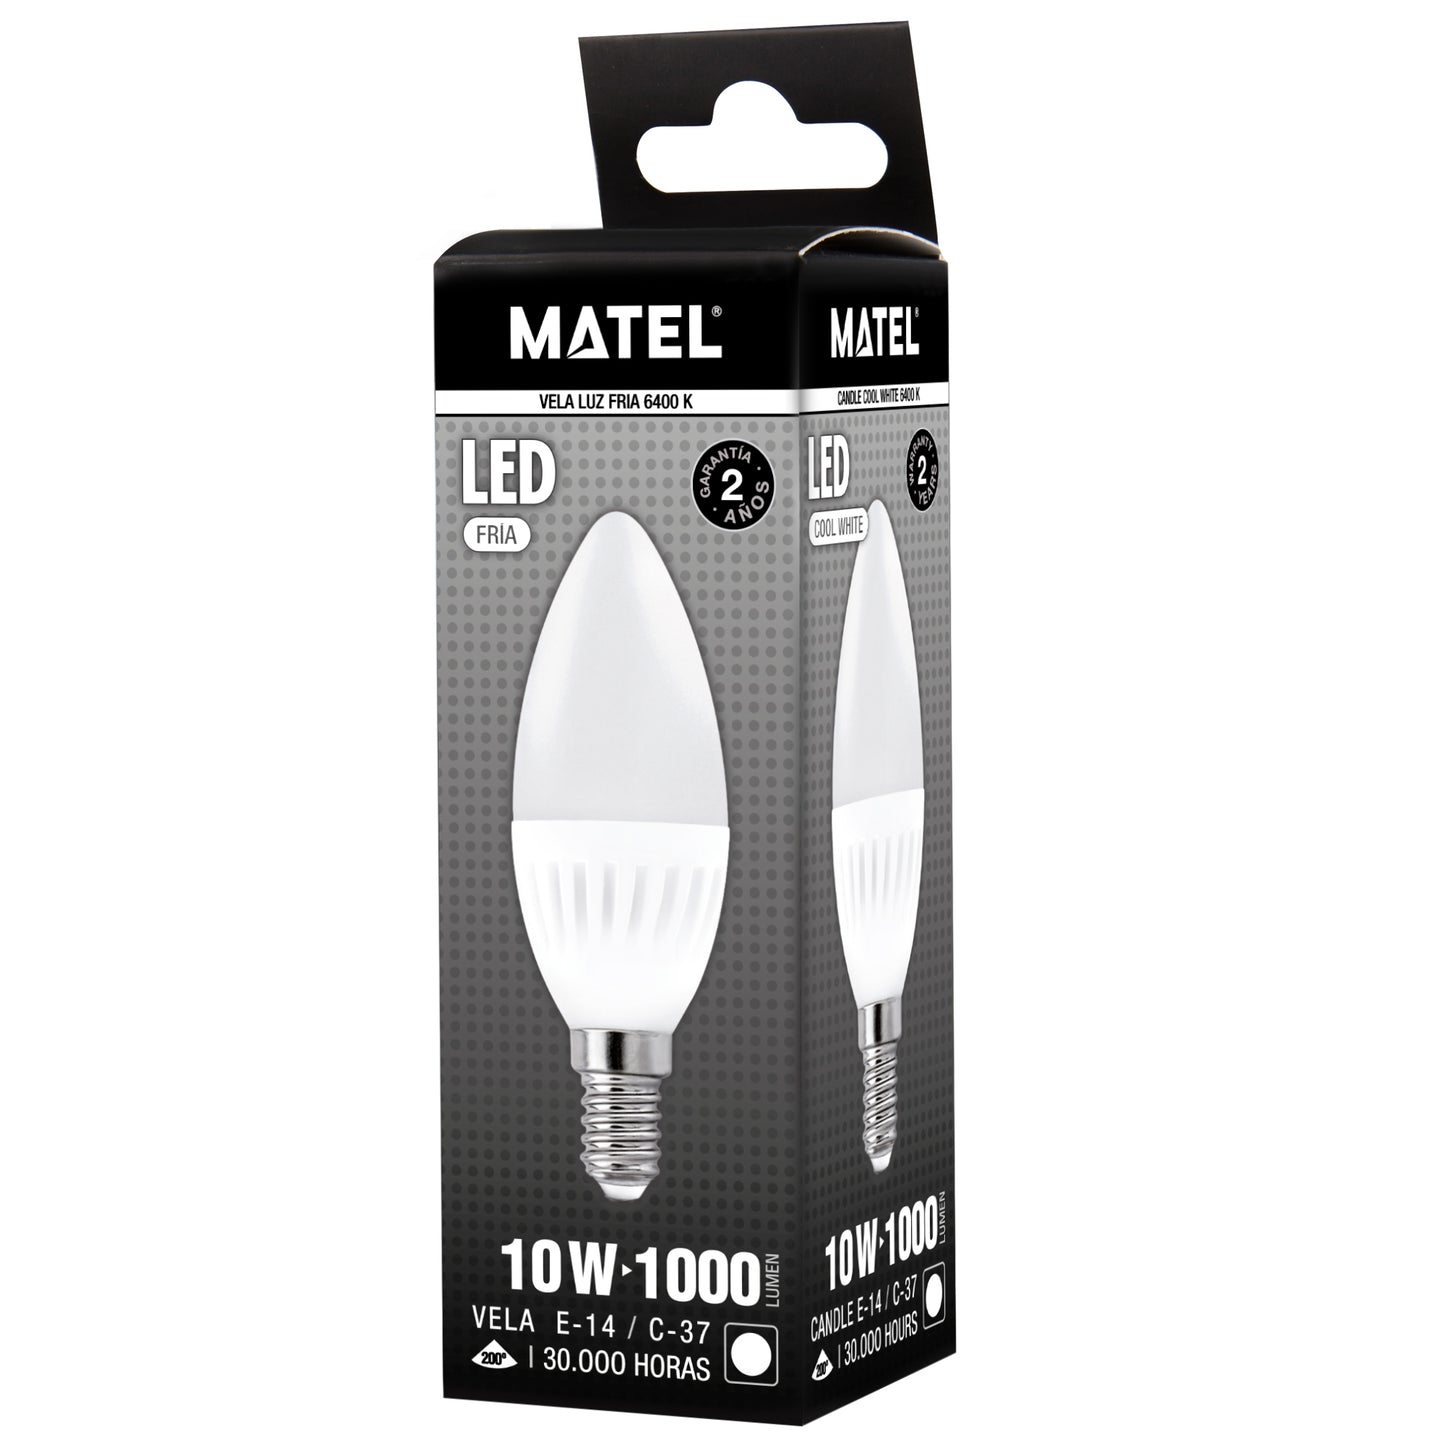 MATEL E14 LAMPE LED BOUGIE 10W 